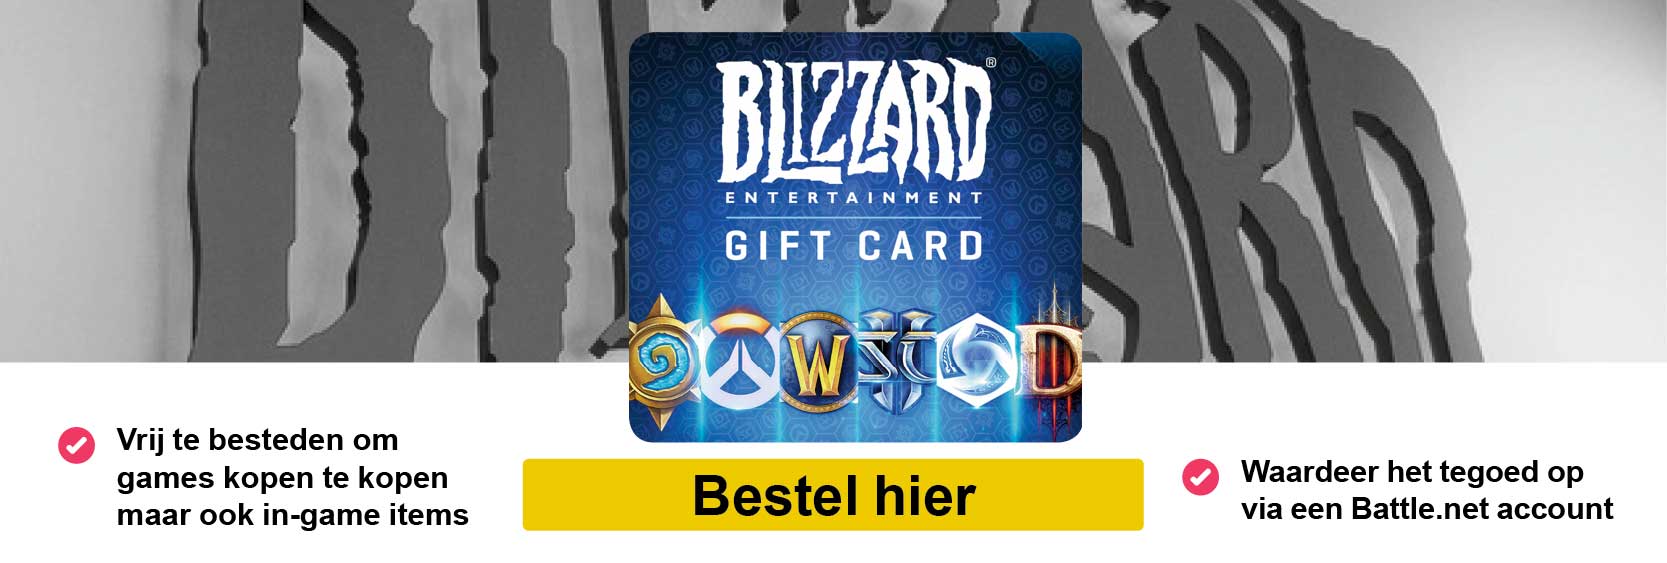 Blizzard_banner_def